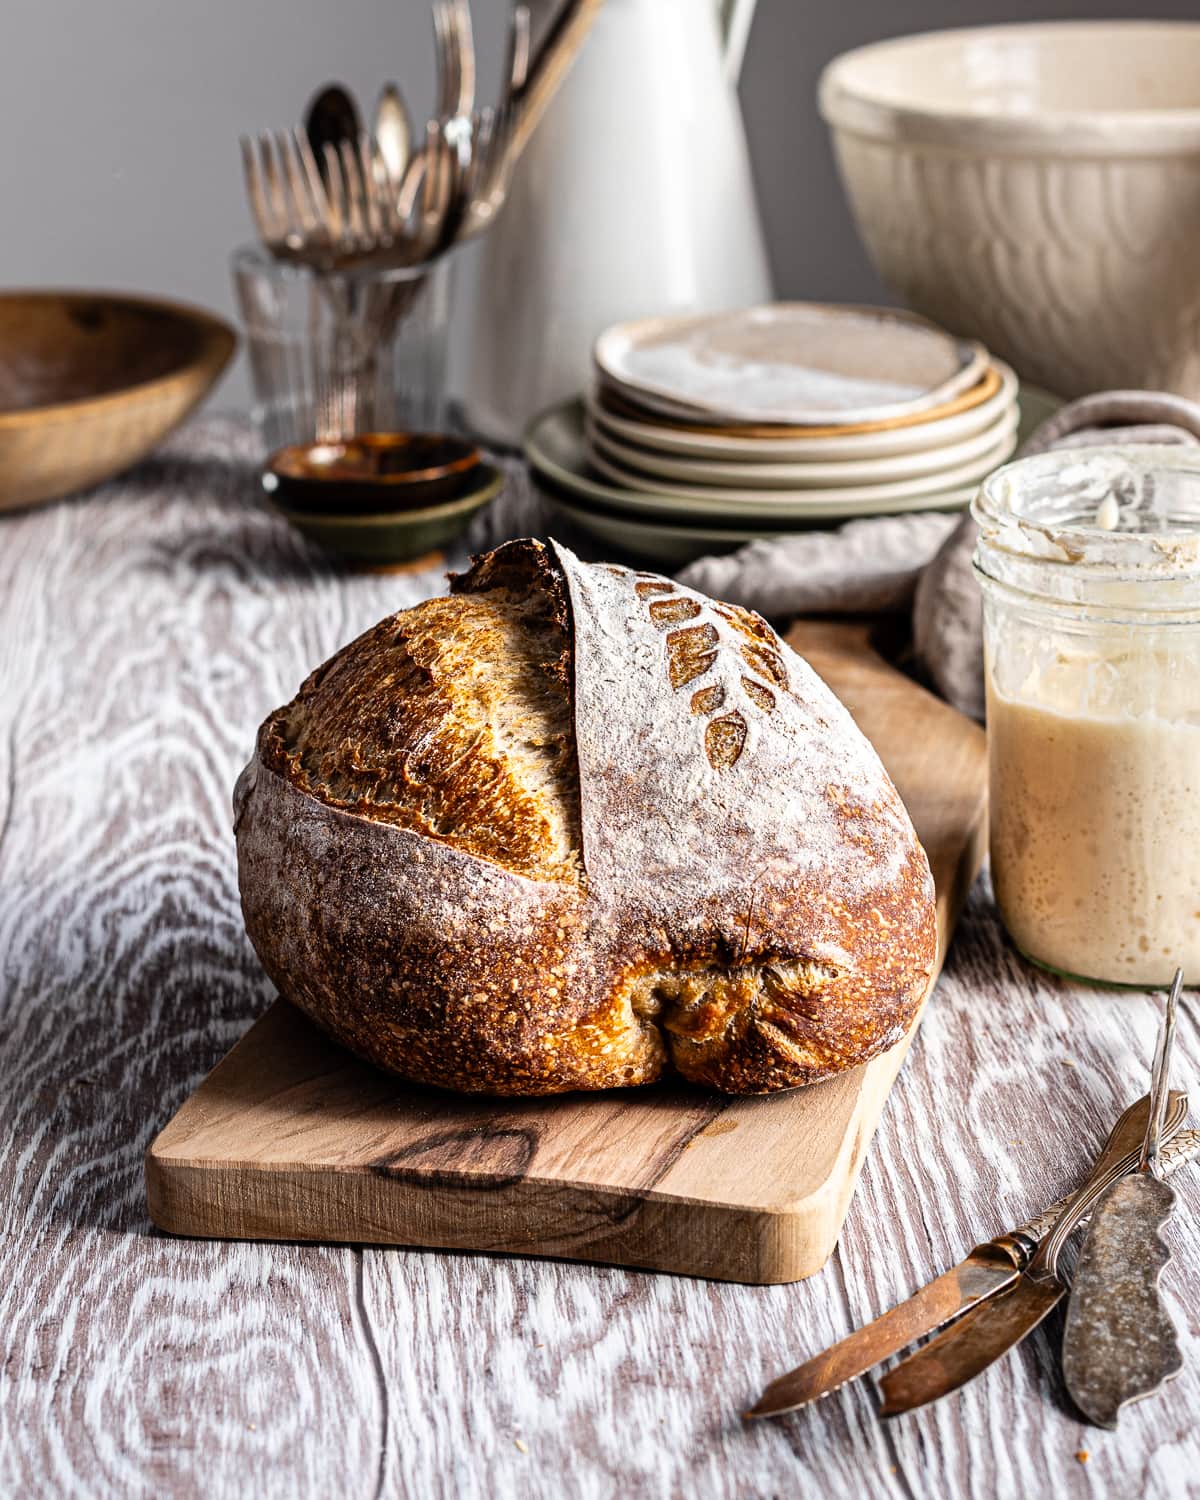 Sourdough bread on a wooden cutting board beside a bubbly sourdough starter in a mason jar.